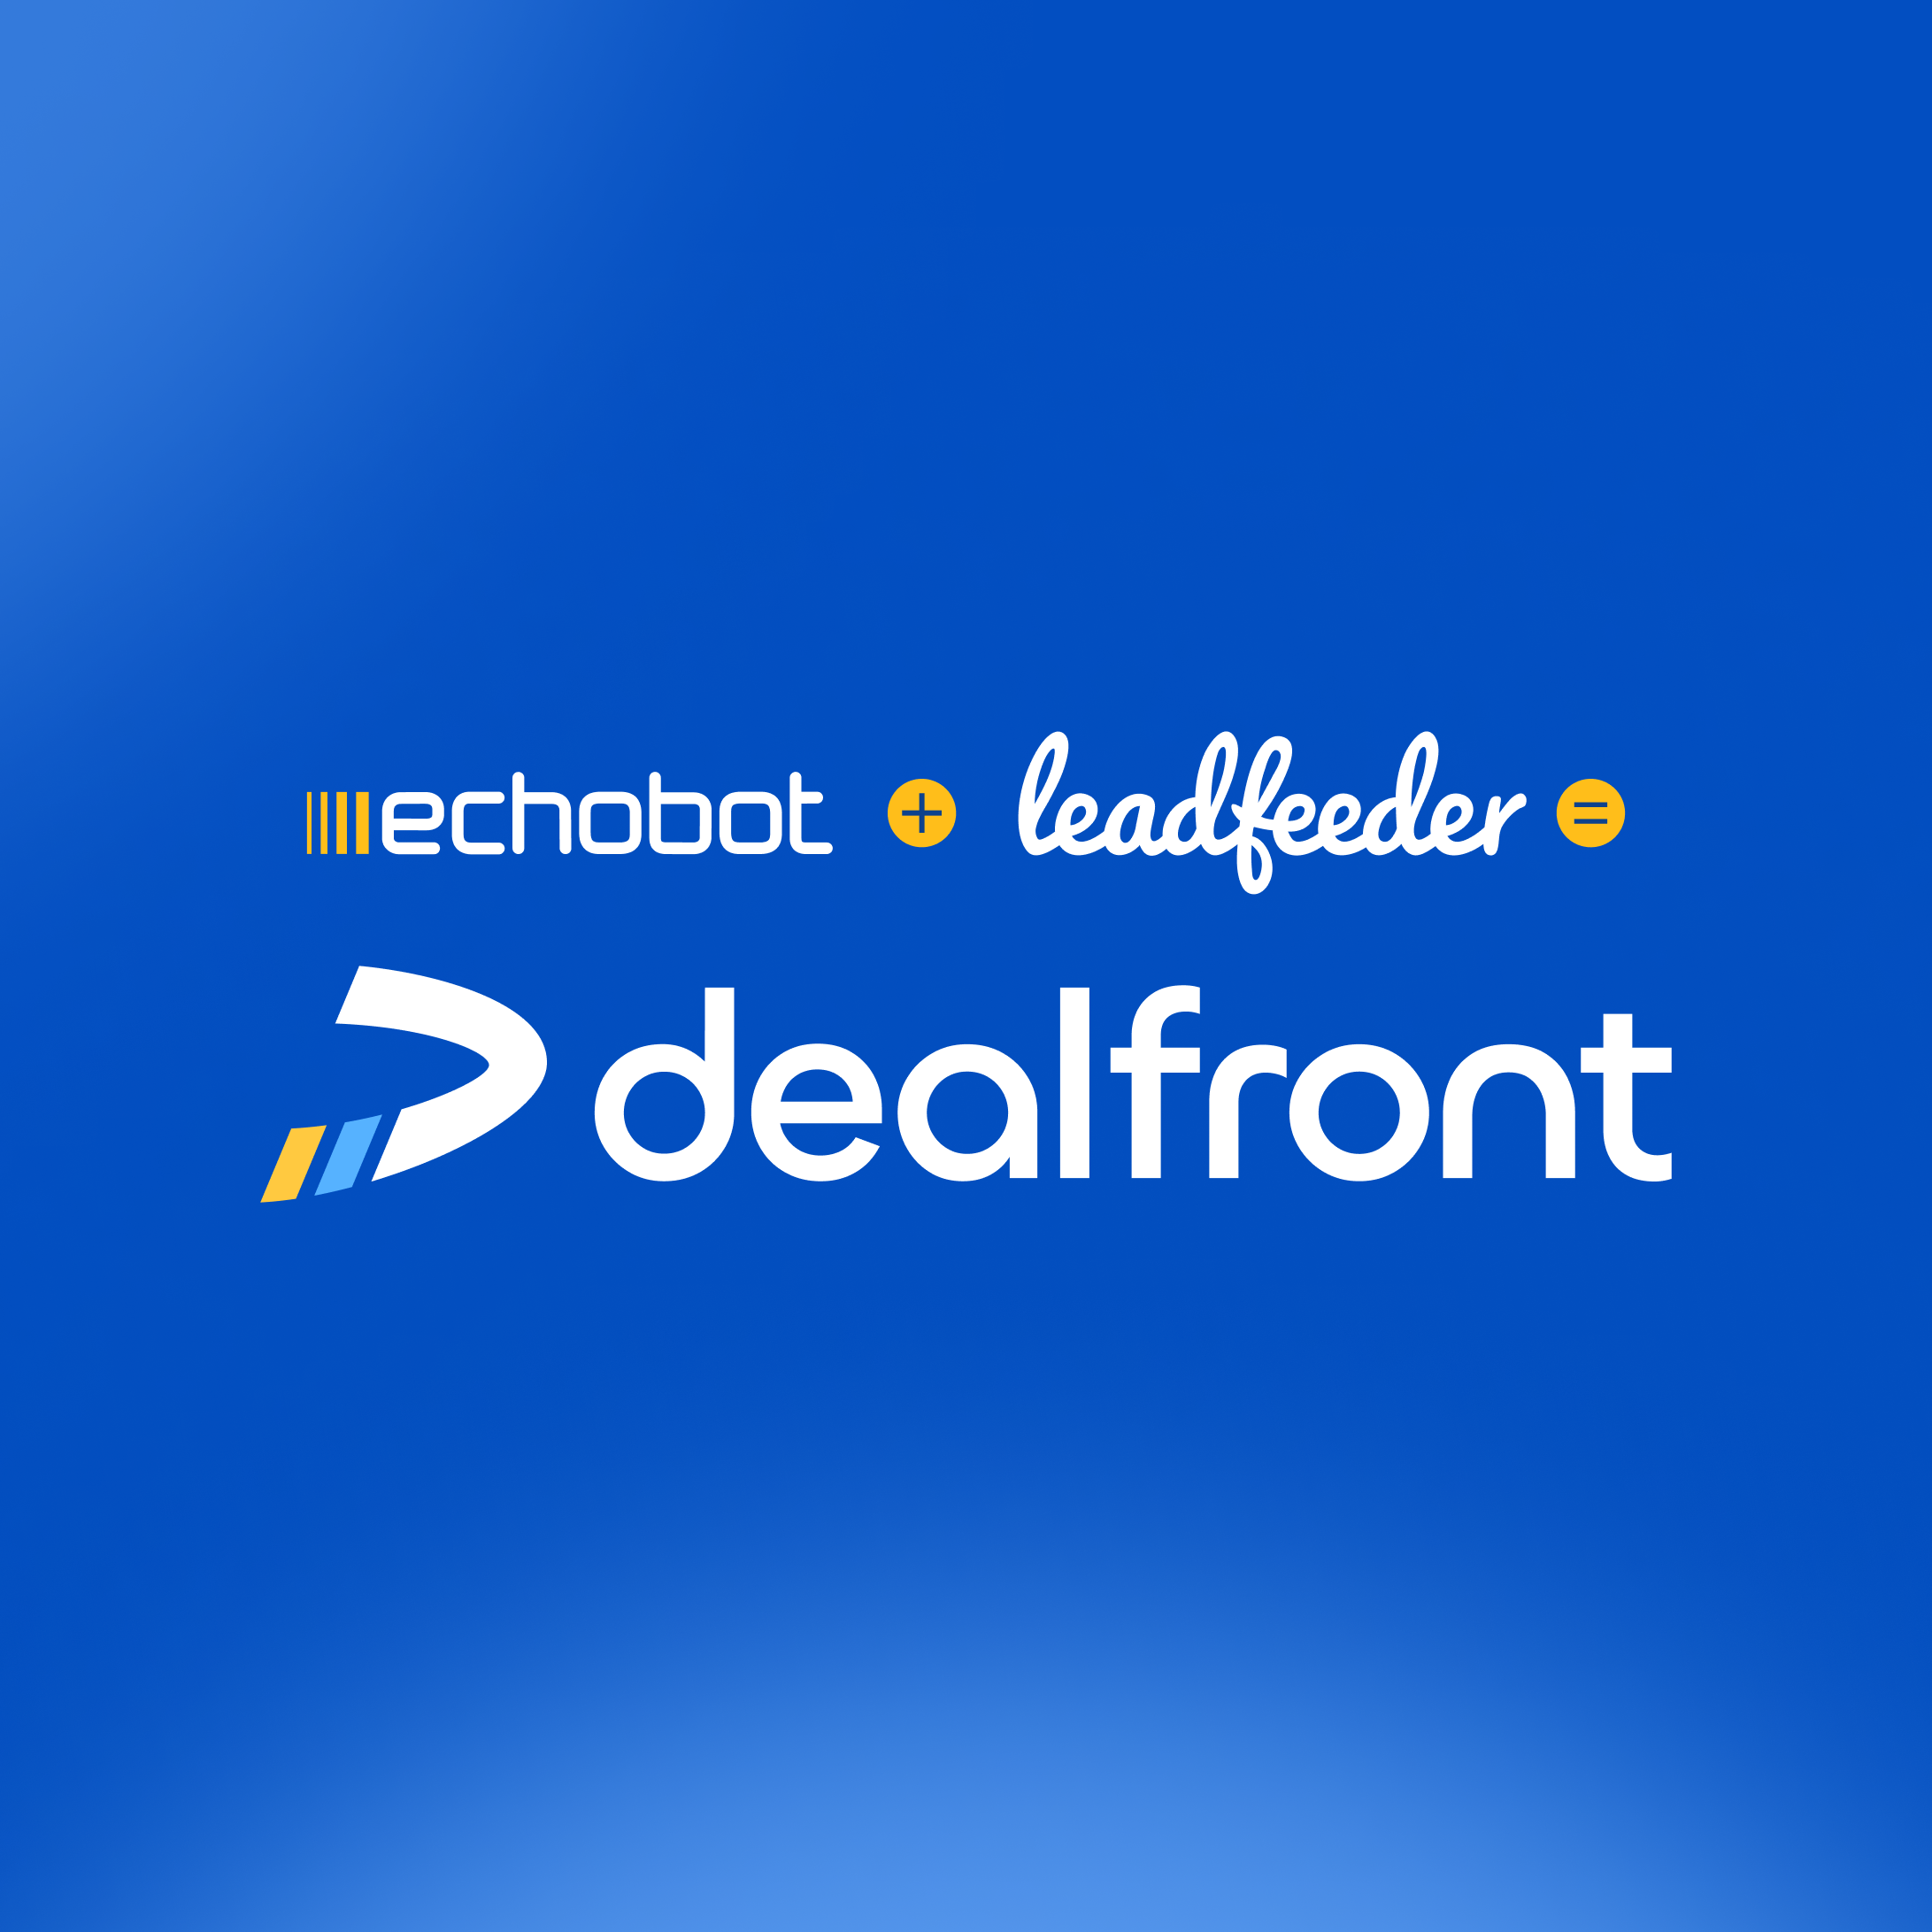 Echobot + Leadfeeder = Dealfront